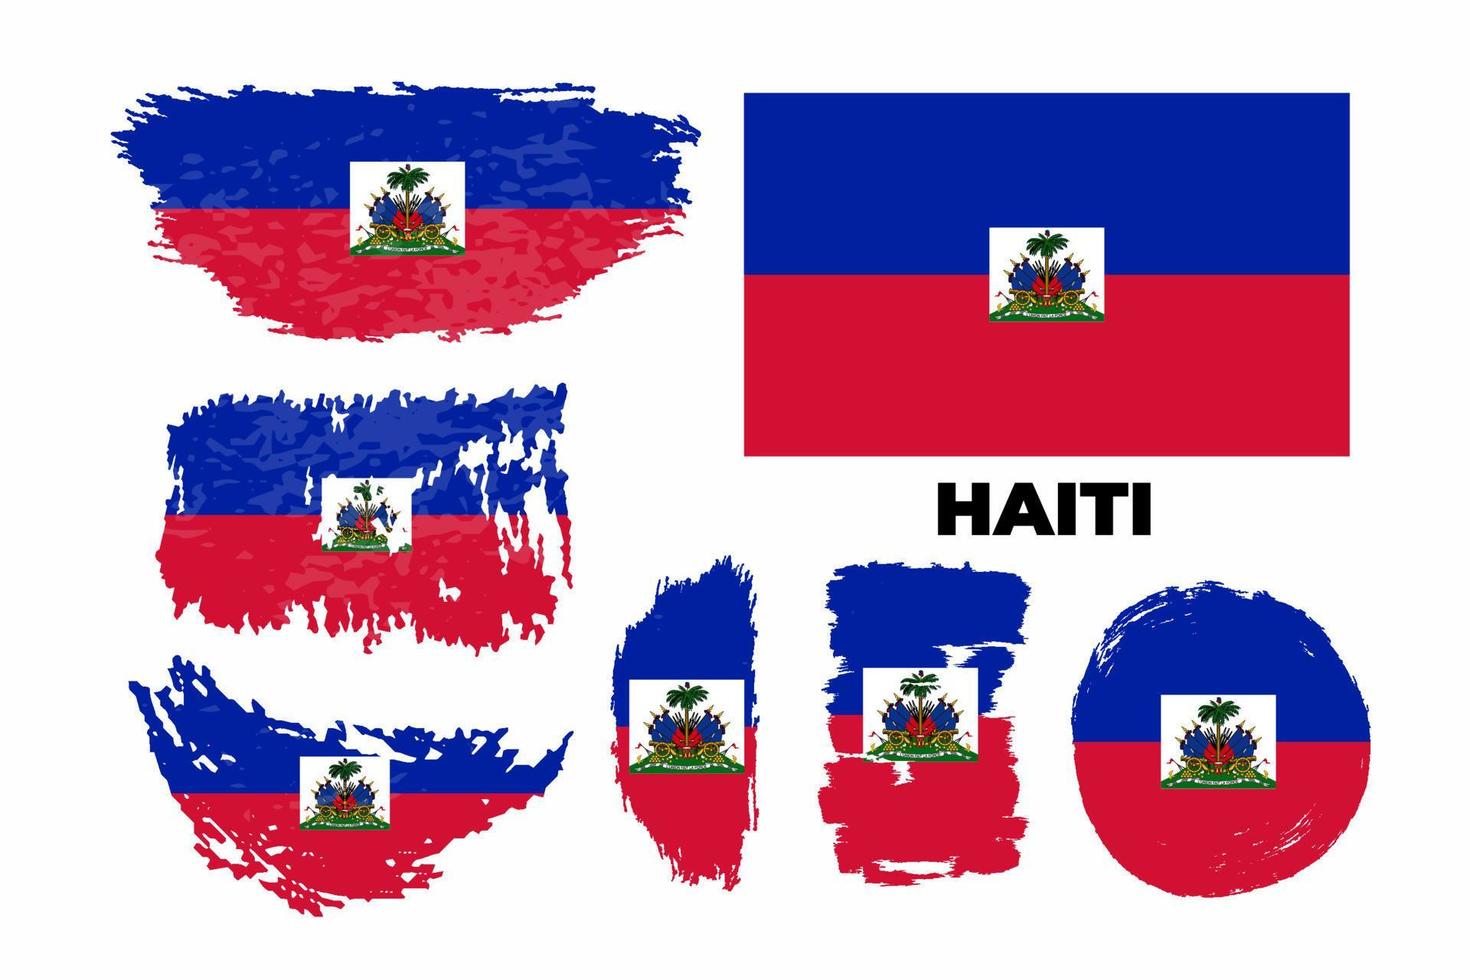 illustrazione della bandiera di haiti dipinta a pennello in stile grunge con tipografia del giorno dell'indipendenza. insieme artistico di vettore della bandiera di riserva della pennellata dell'acquerello.